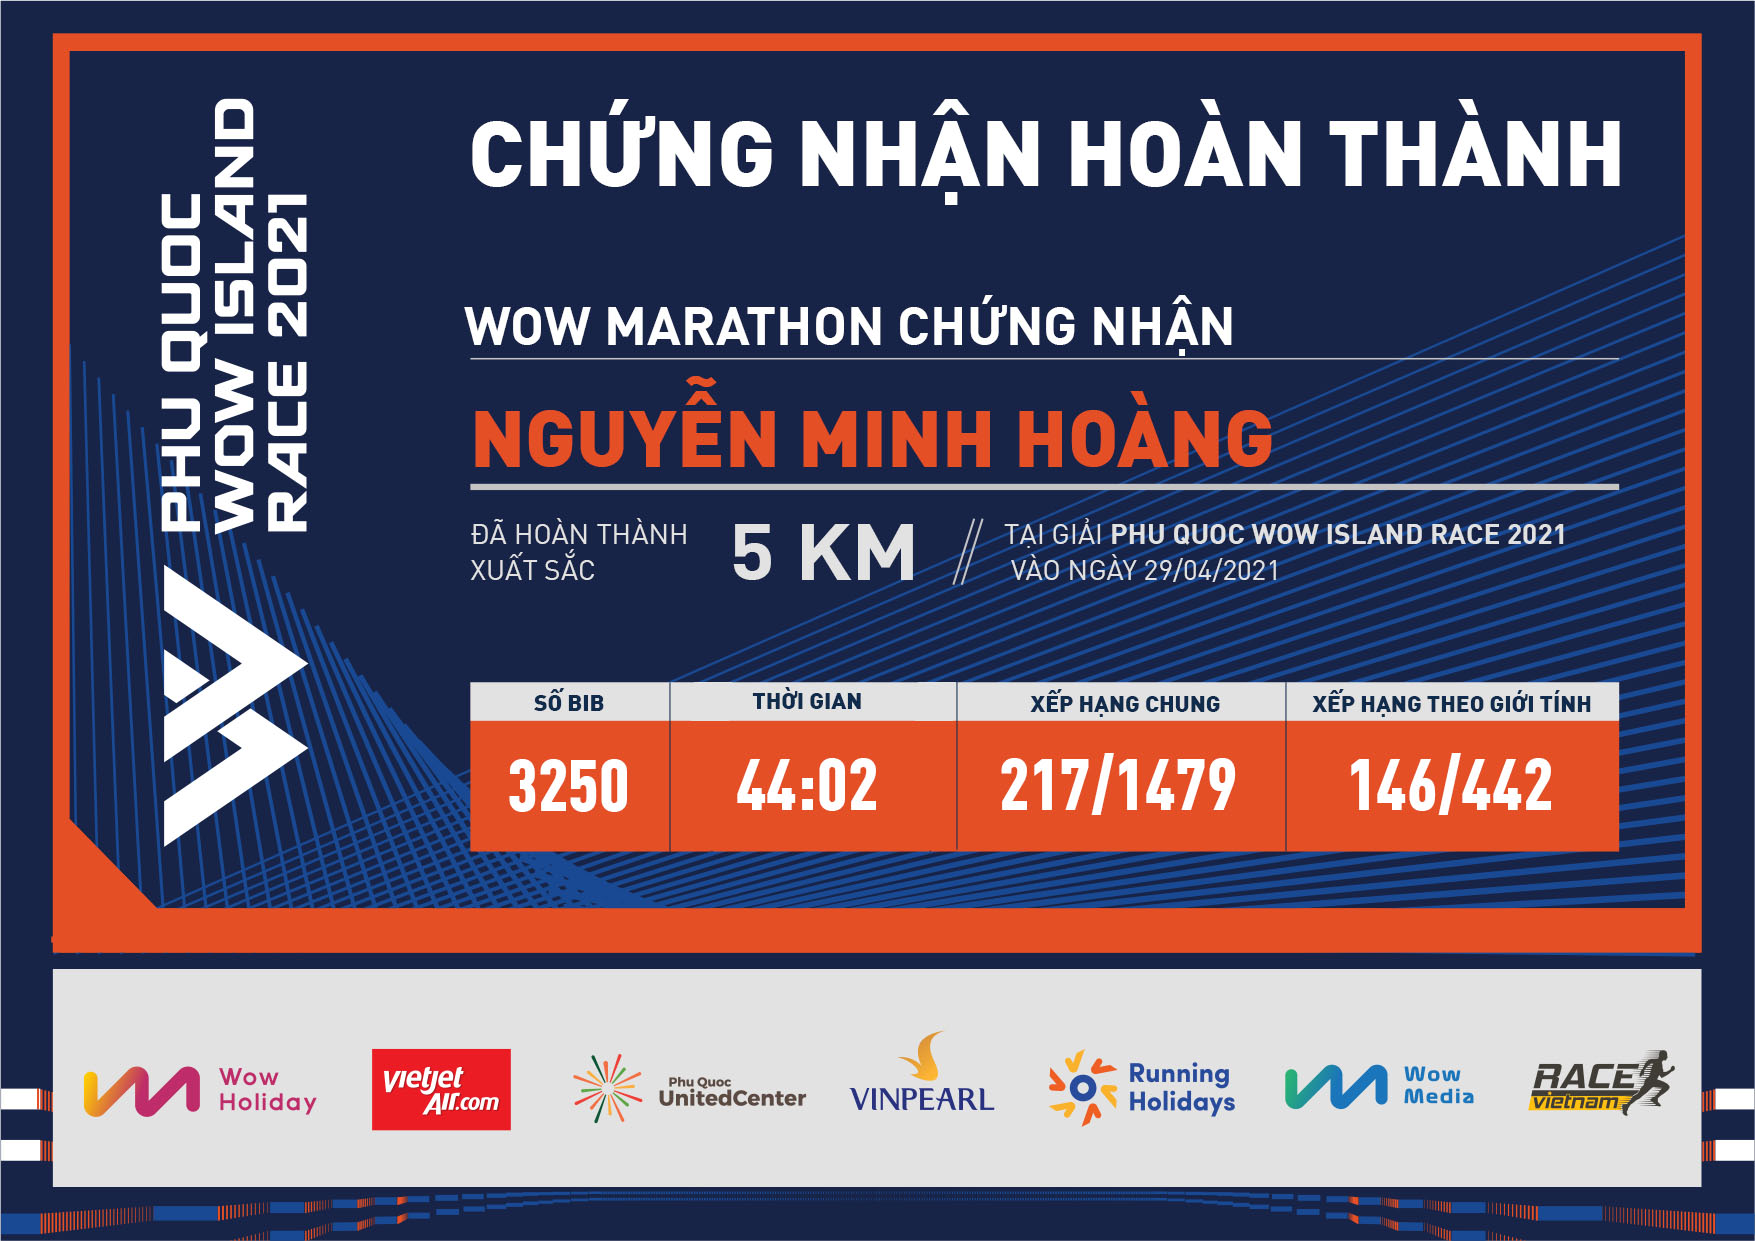 3250 - Nguyễn Minh Hoàng